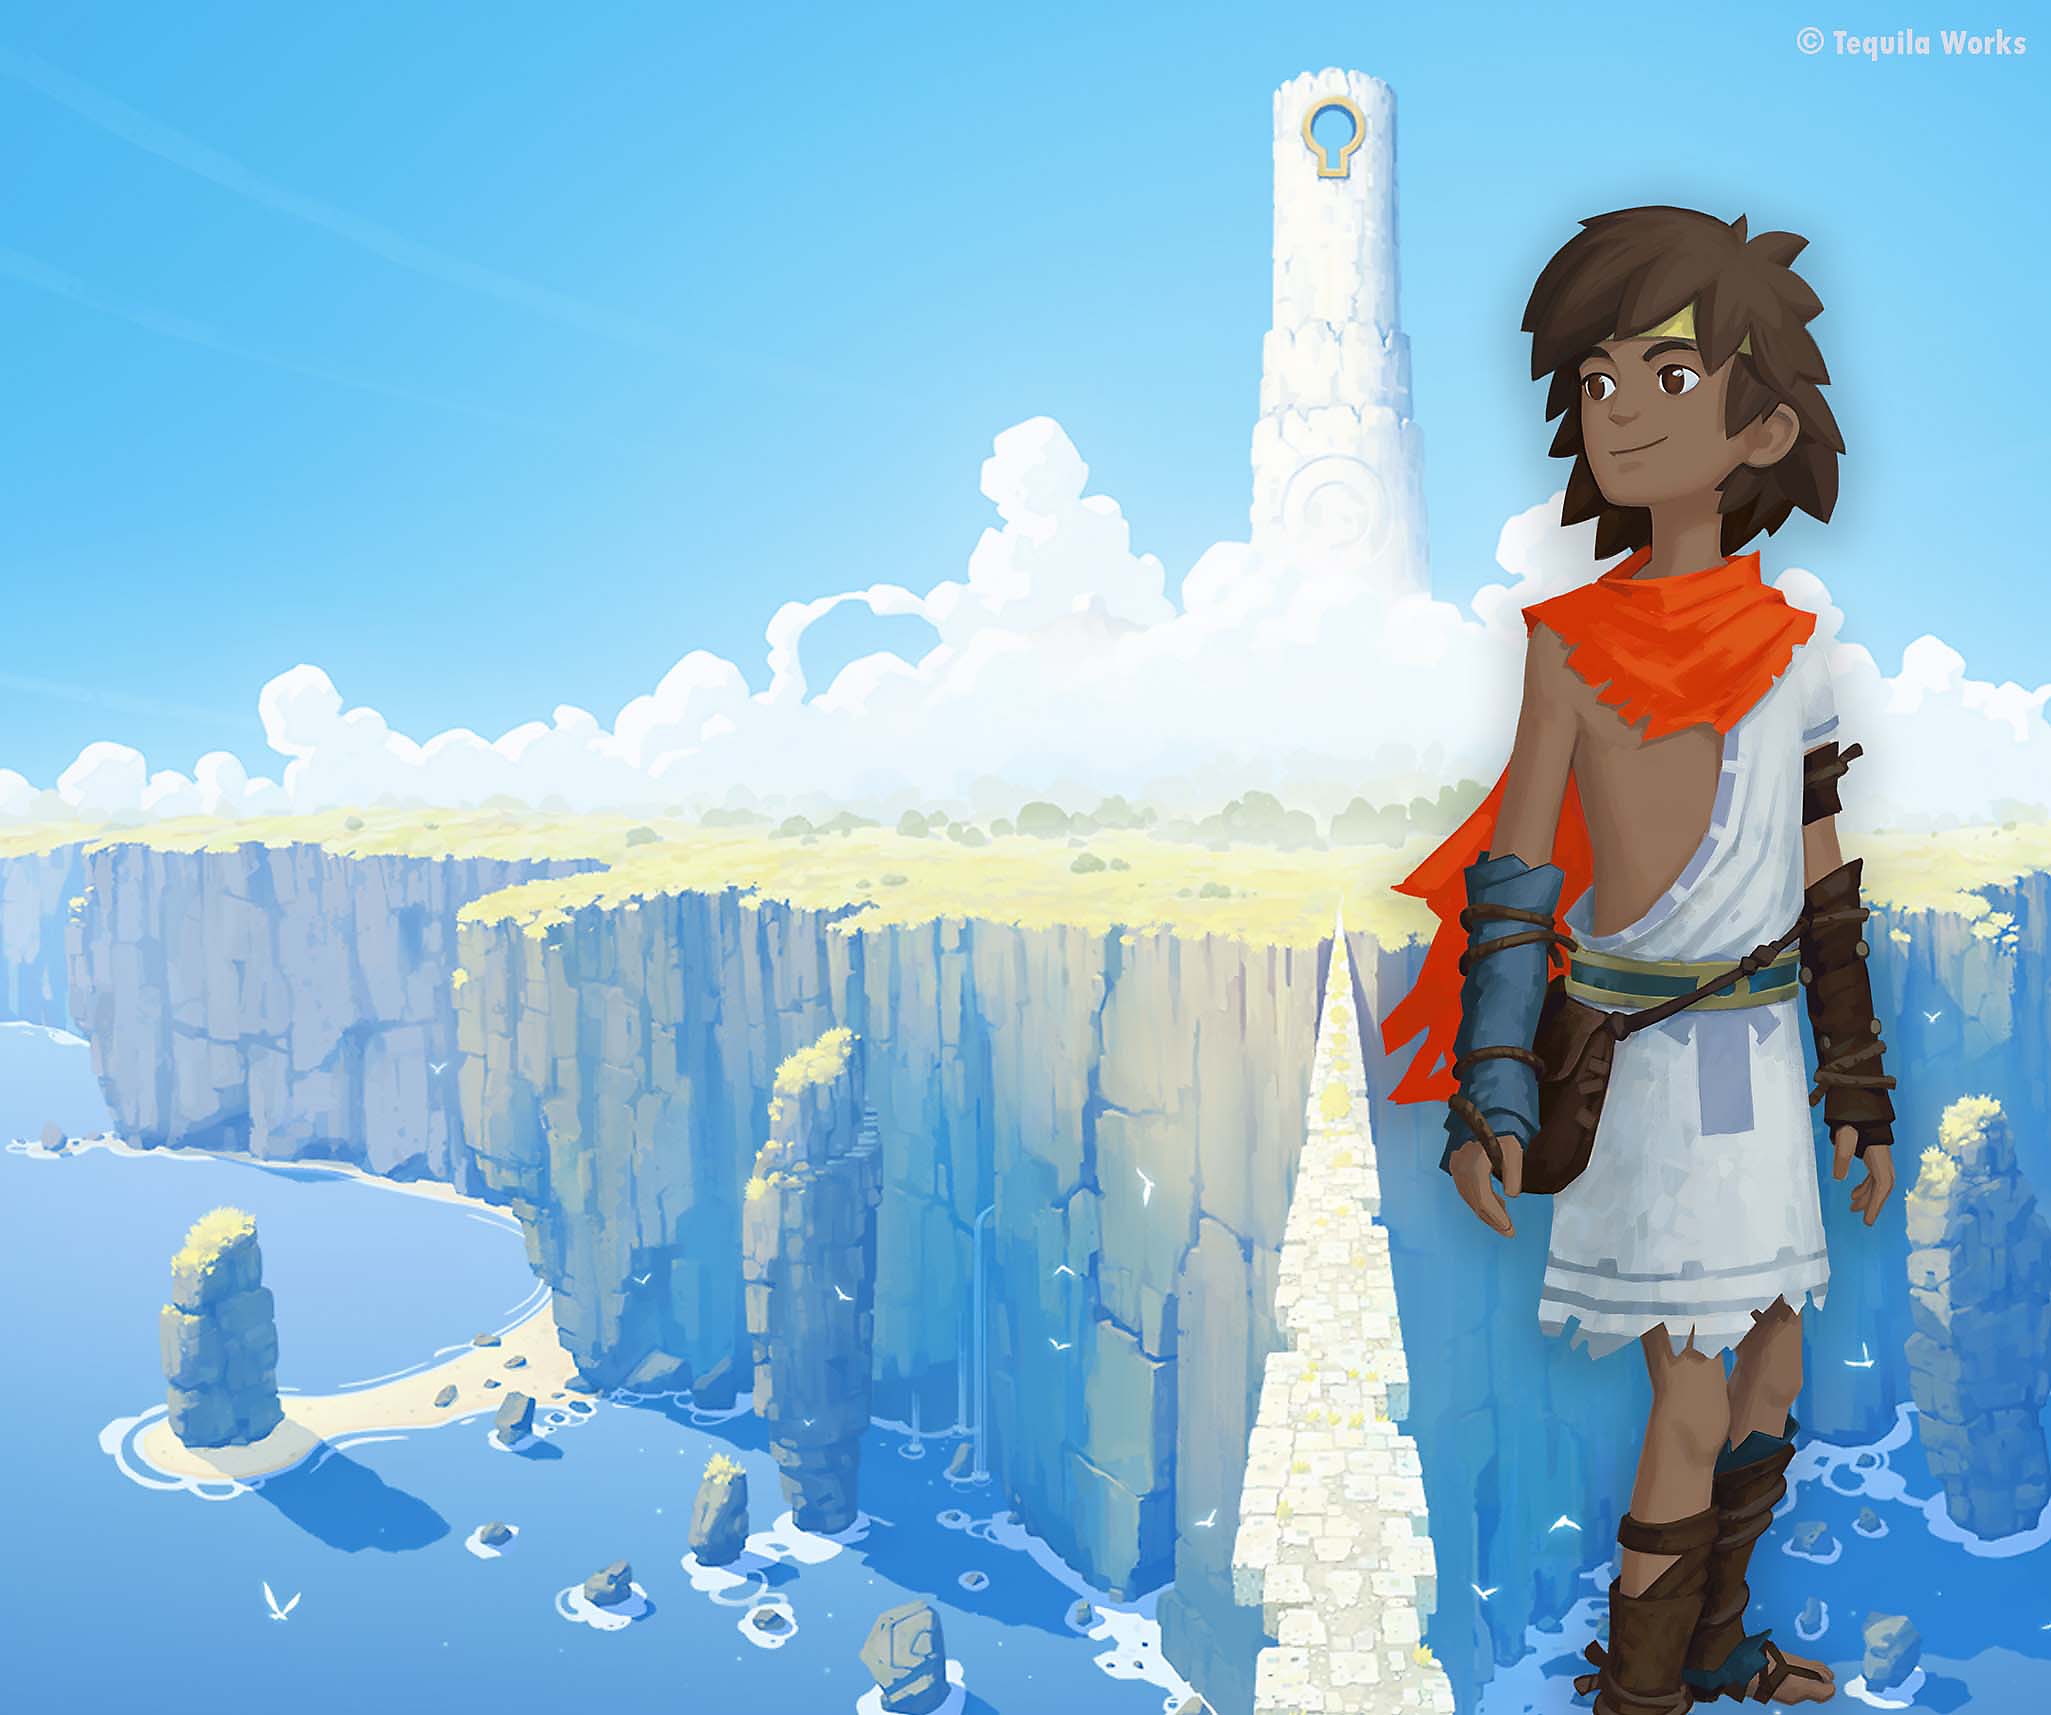 Arte principal de RiME que muestra al personaje principal superimpuesto sobre a una imponente isla cubierta de nubes.